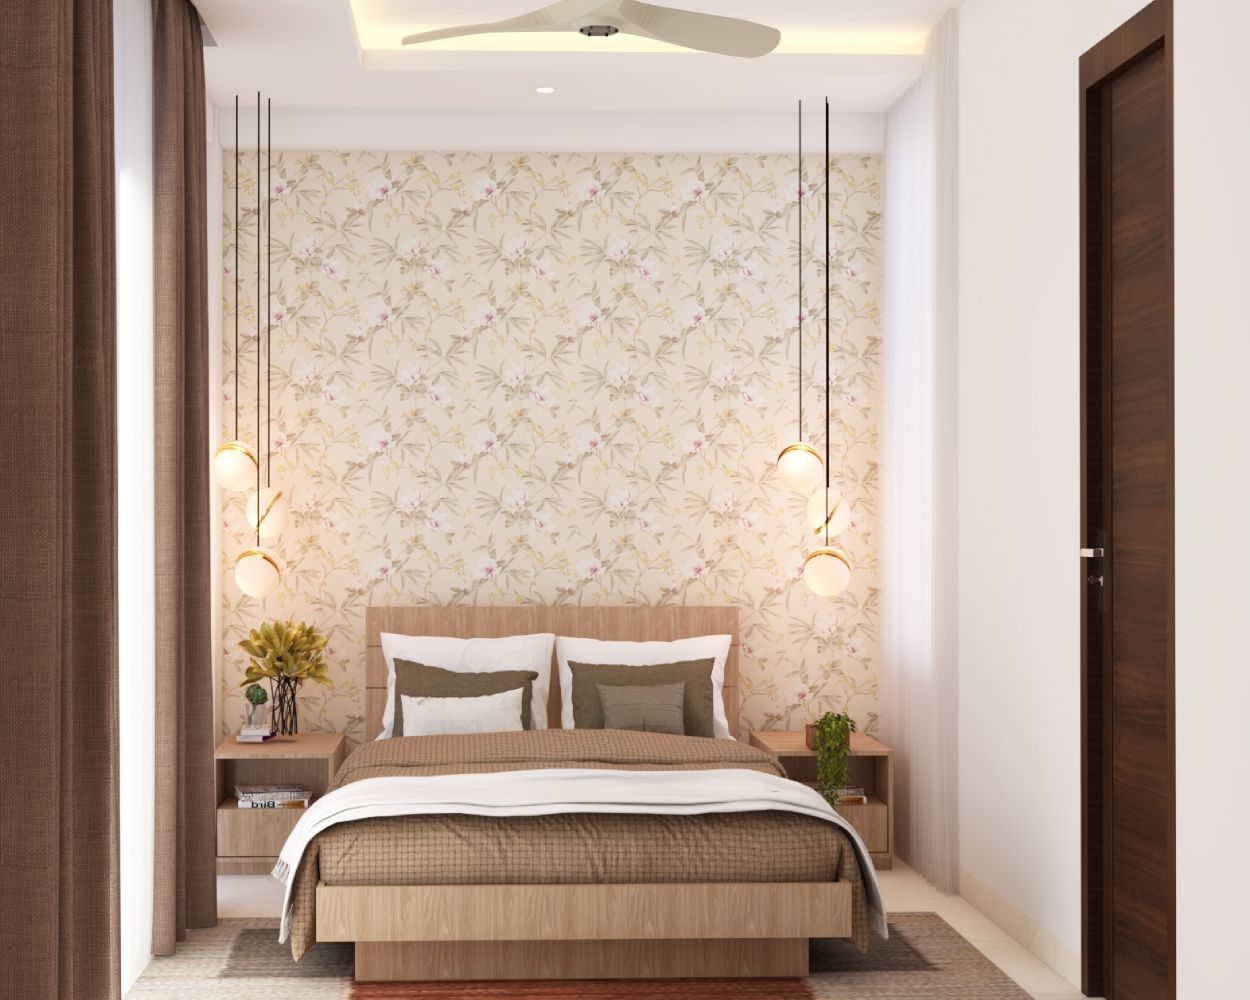 Modern Beige Floral Wallpaper Design For Guest Bedrooms